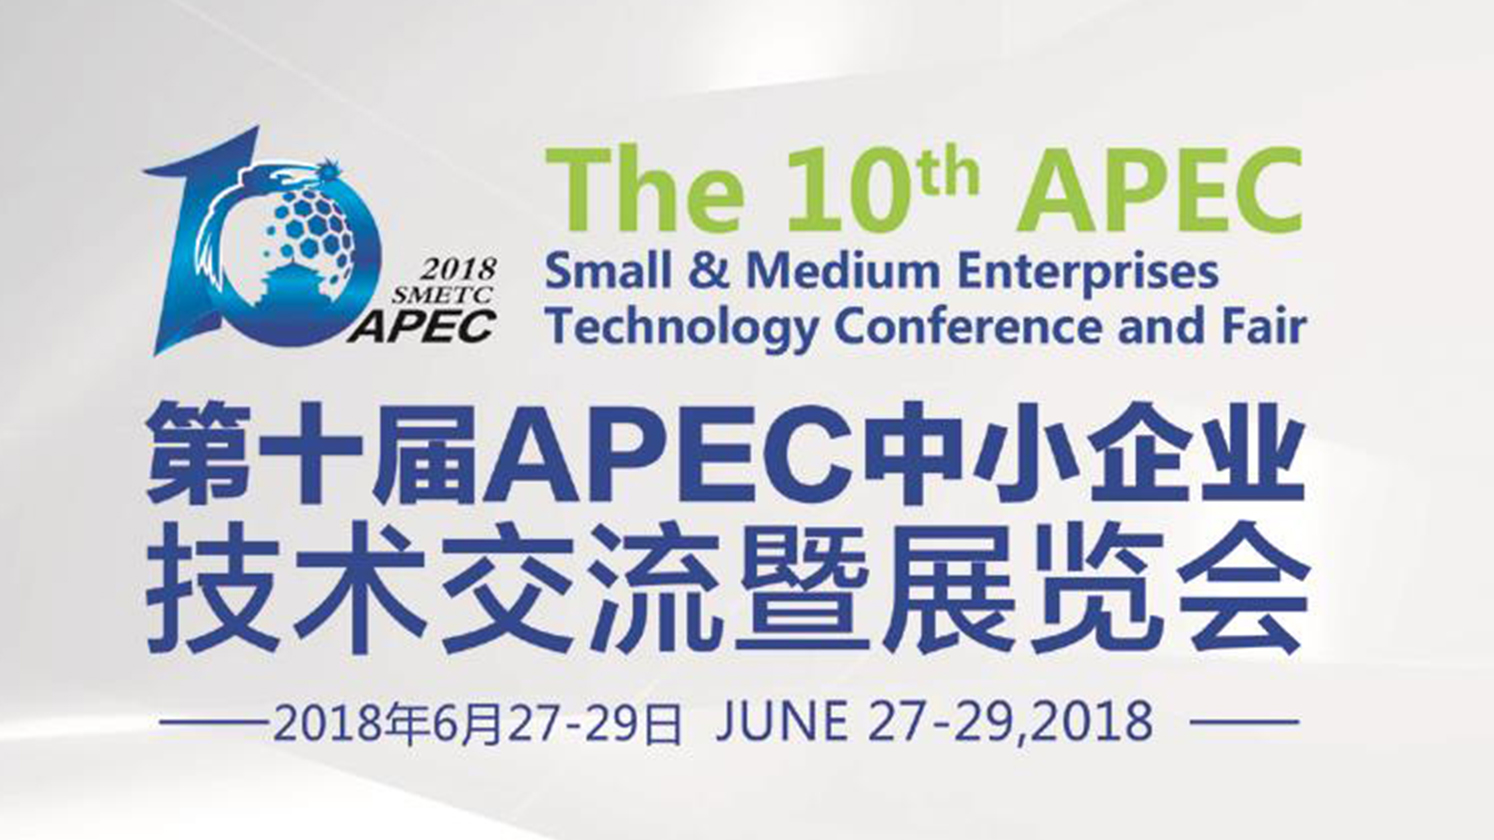 LKC hydraulic will participate the 10th APEC SMETC